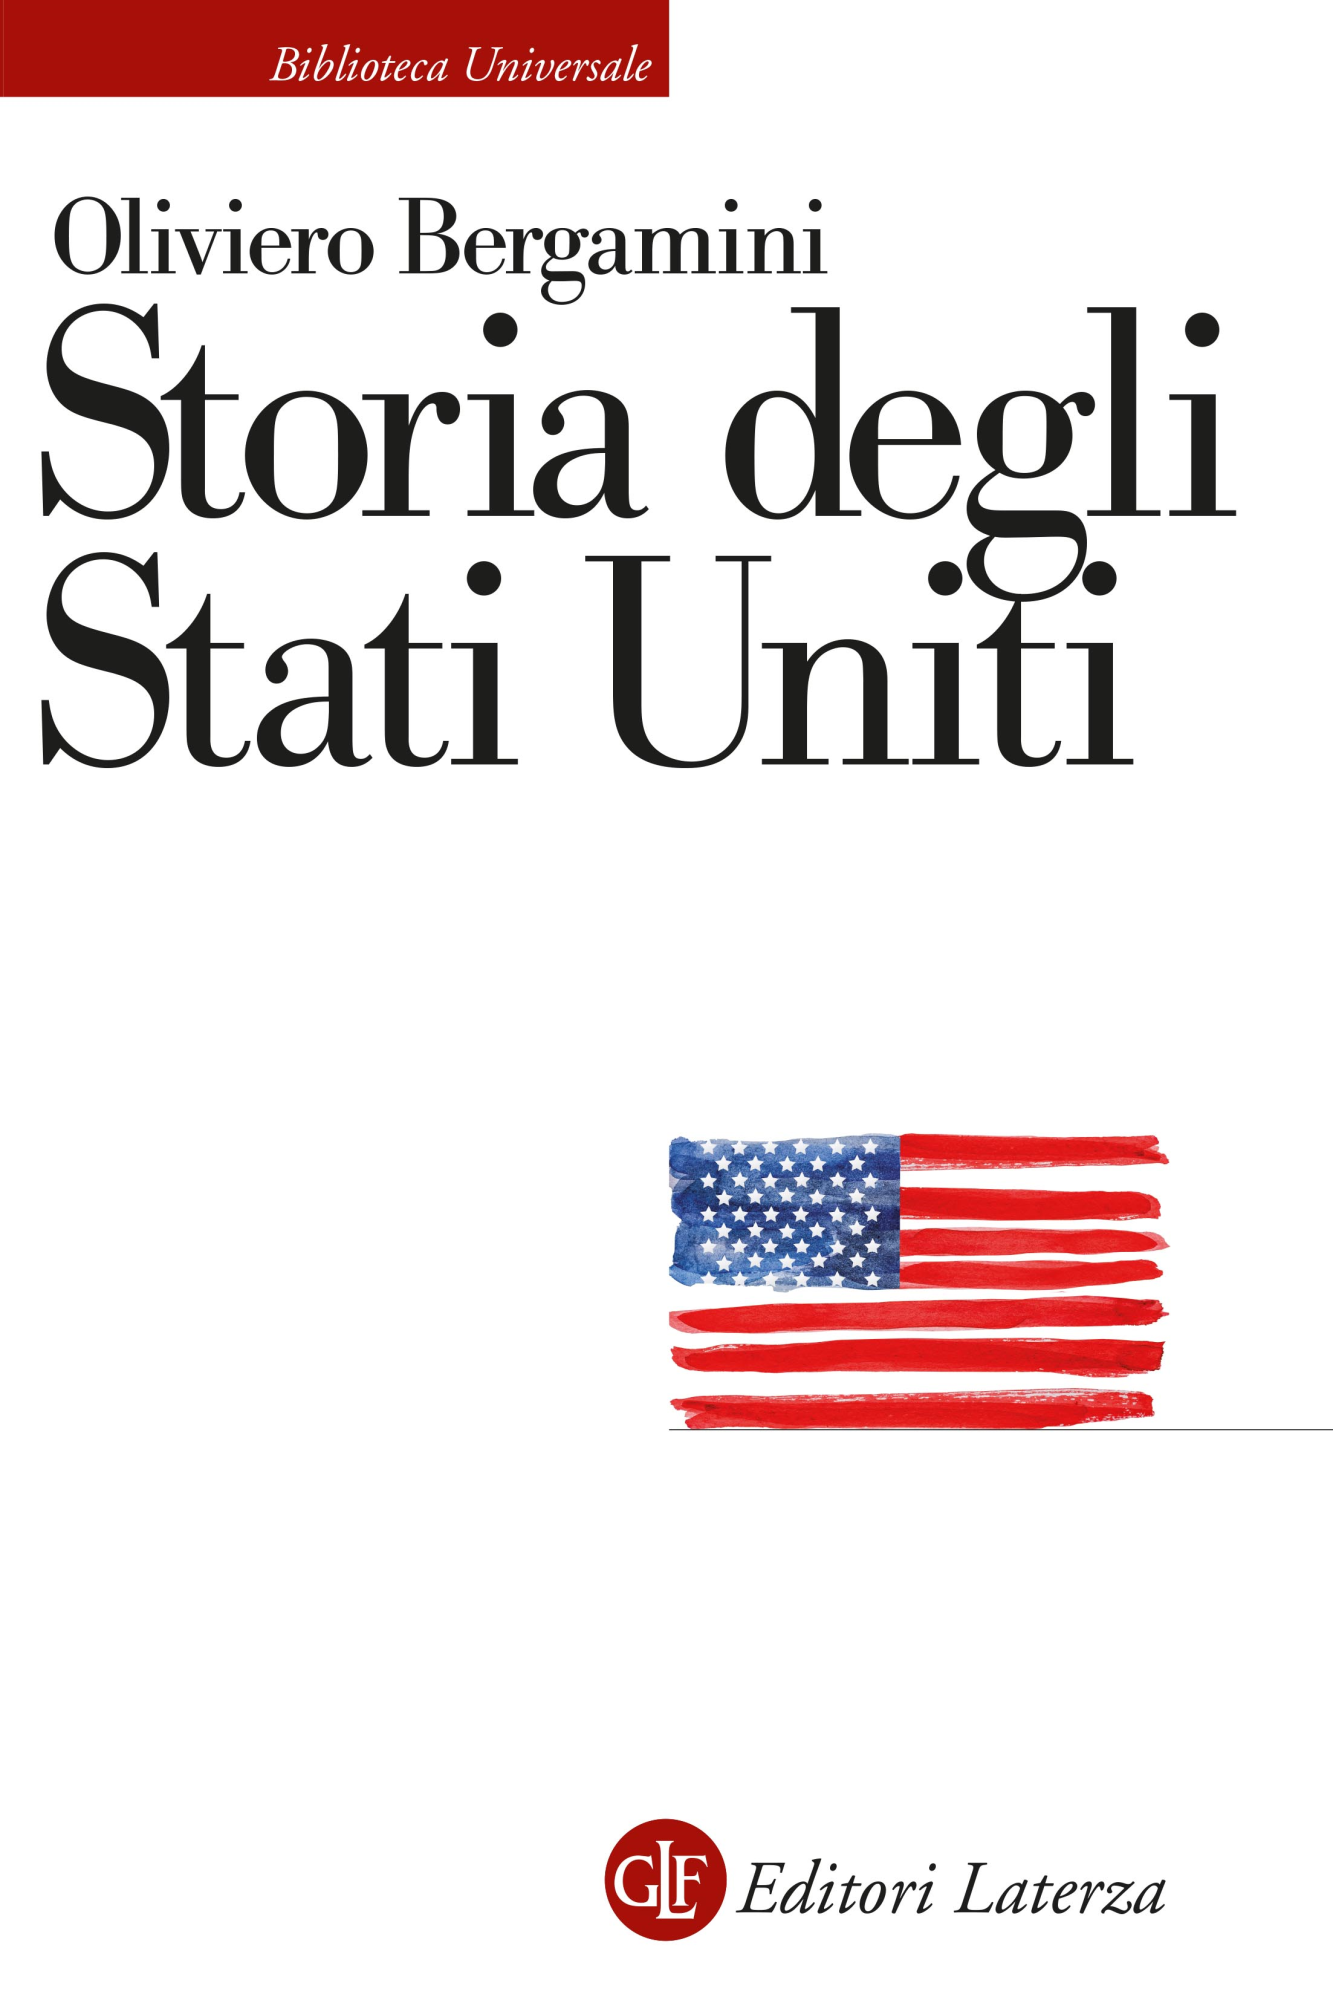 Libri Oliviero Bergamini - Storia Degli Stati Uniti NUOVO SIGILLATO, EDIZIONE DEL 17/02/2023 SUBITO DISPONIBILE